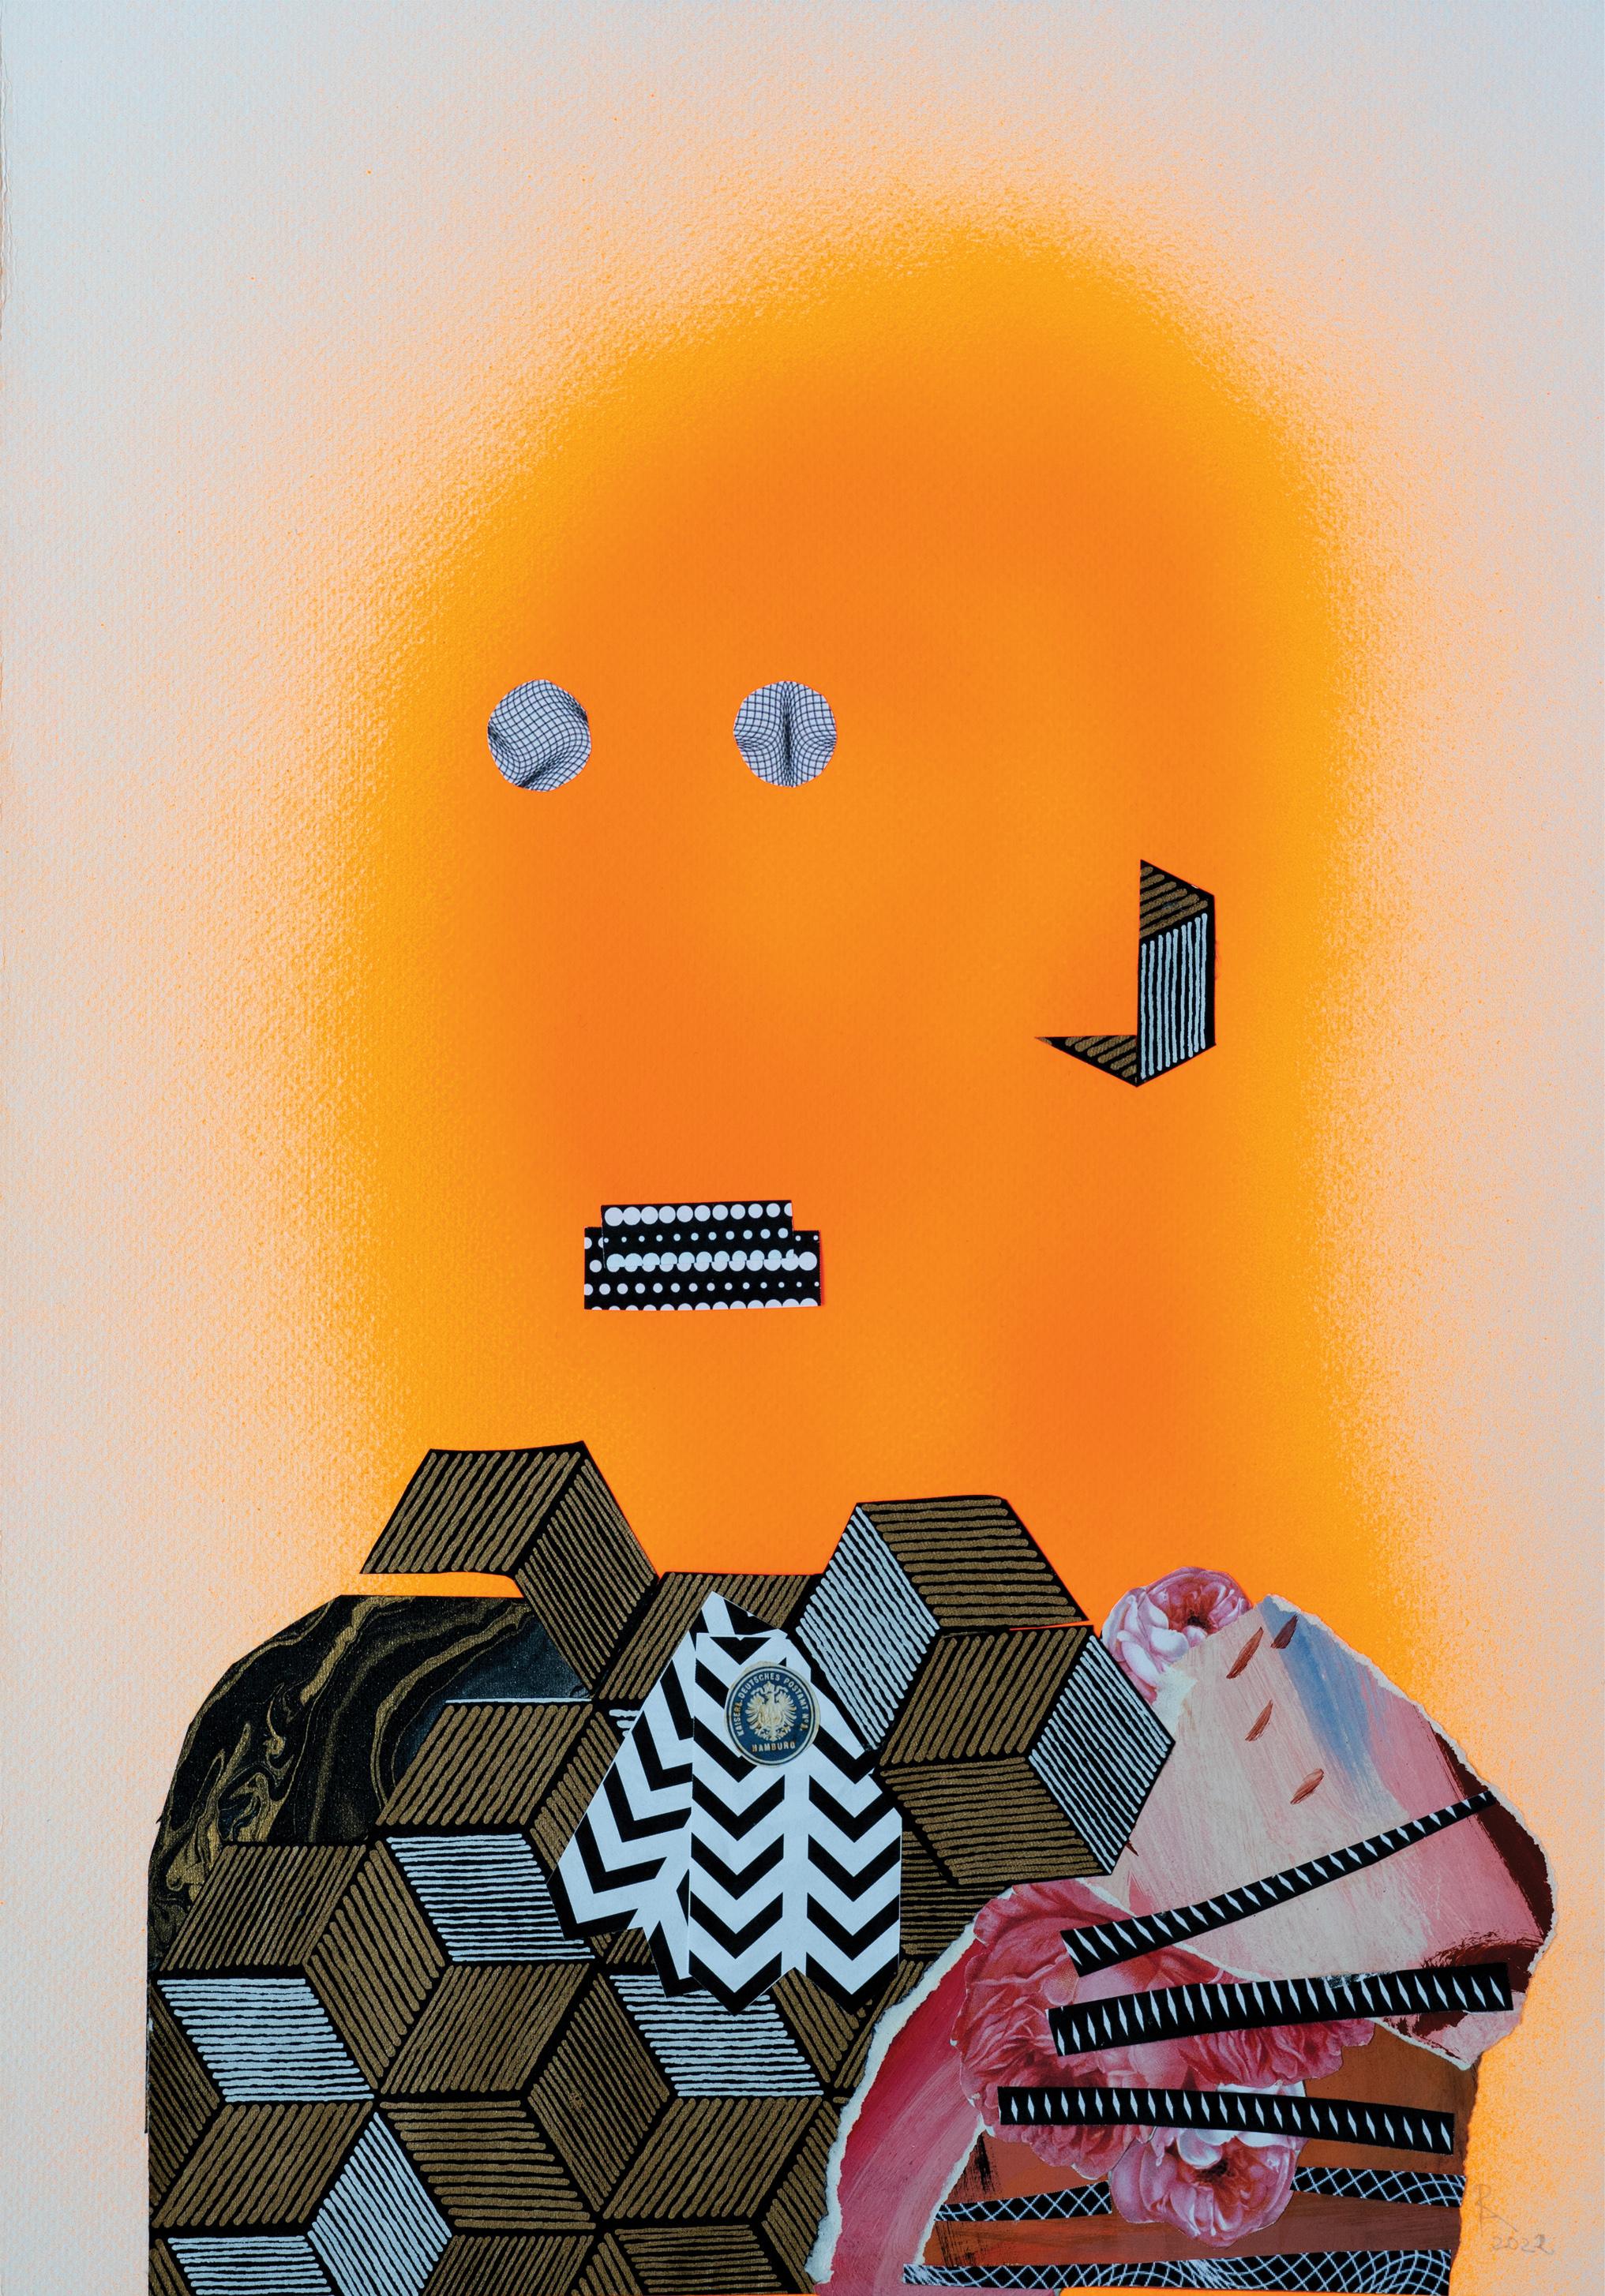 The Headless Soldier - Orange, Papier, Zeitgenössische Kunst, 21. Jahrhundert – Mixed Media Art von Raluca Arnăutu